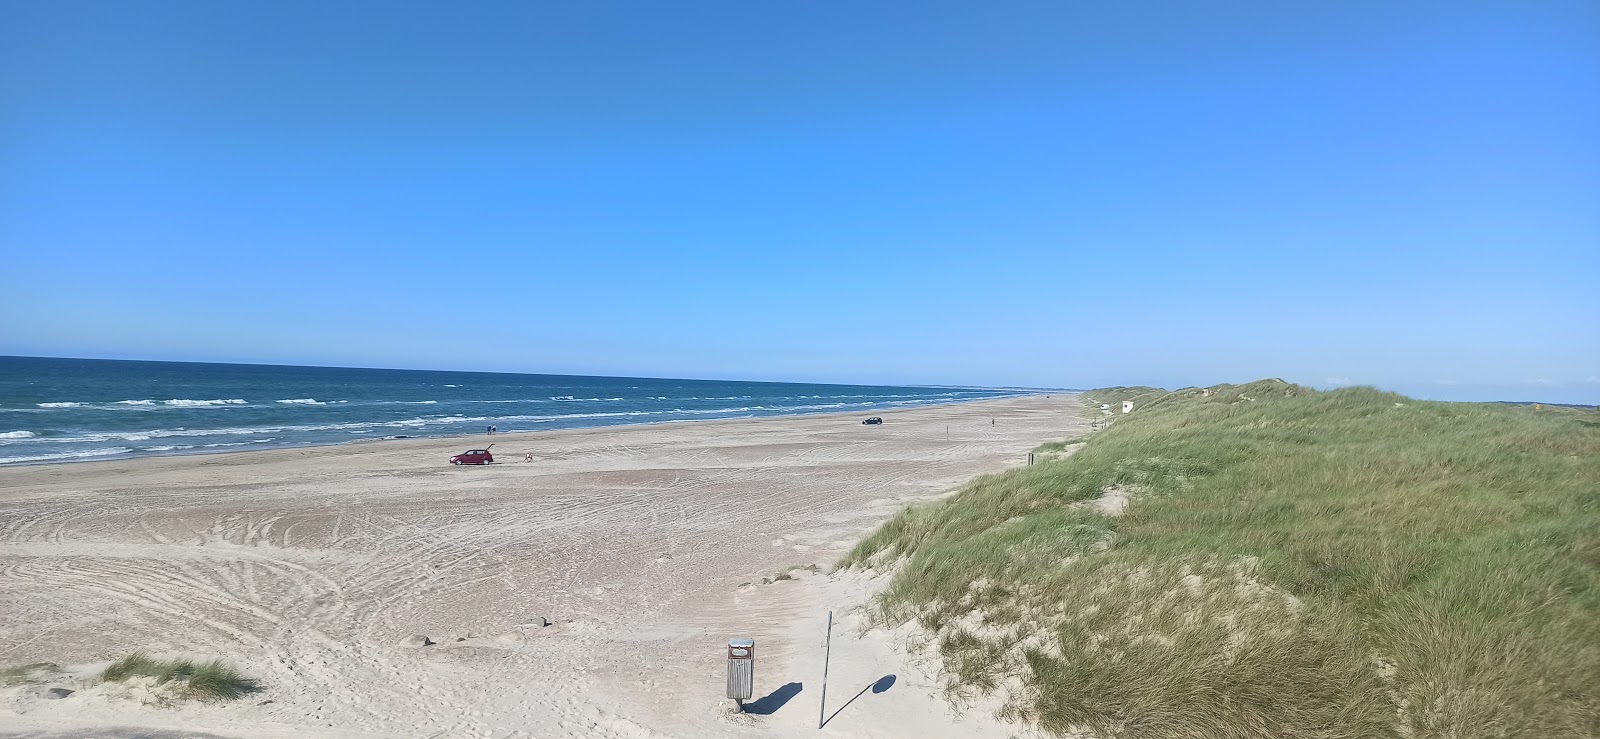 Foto de Ejstrup Beach com areia brilhante superfície